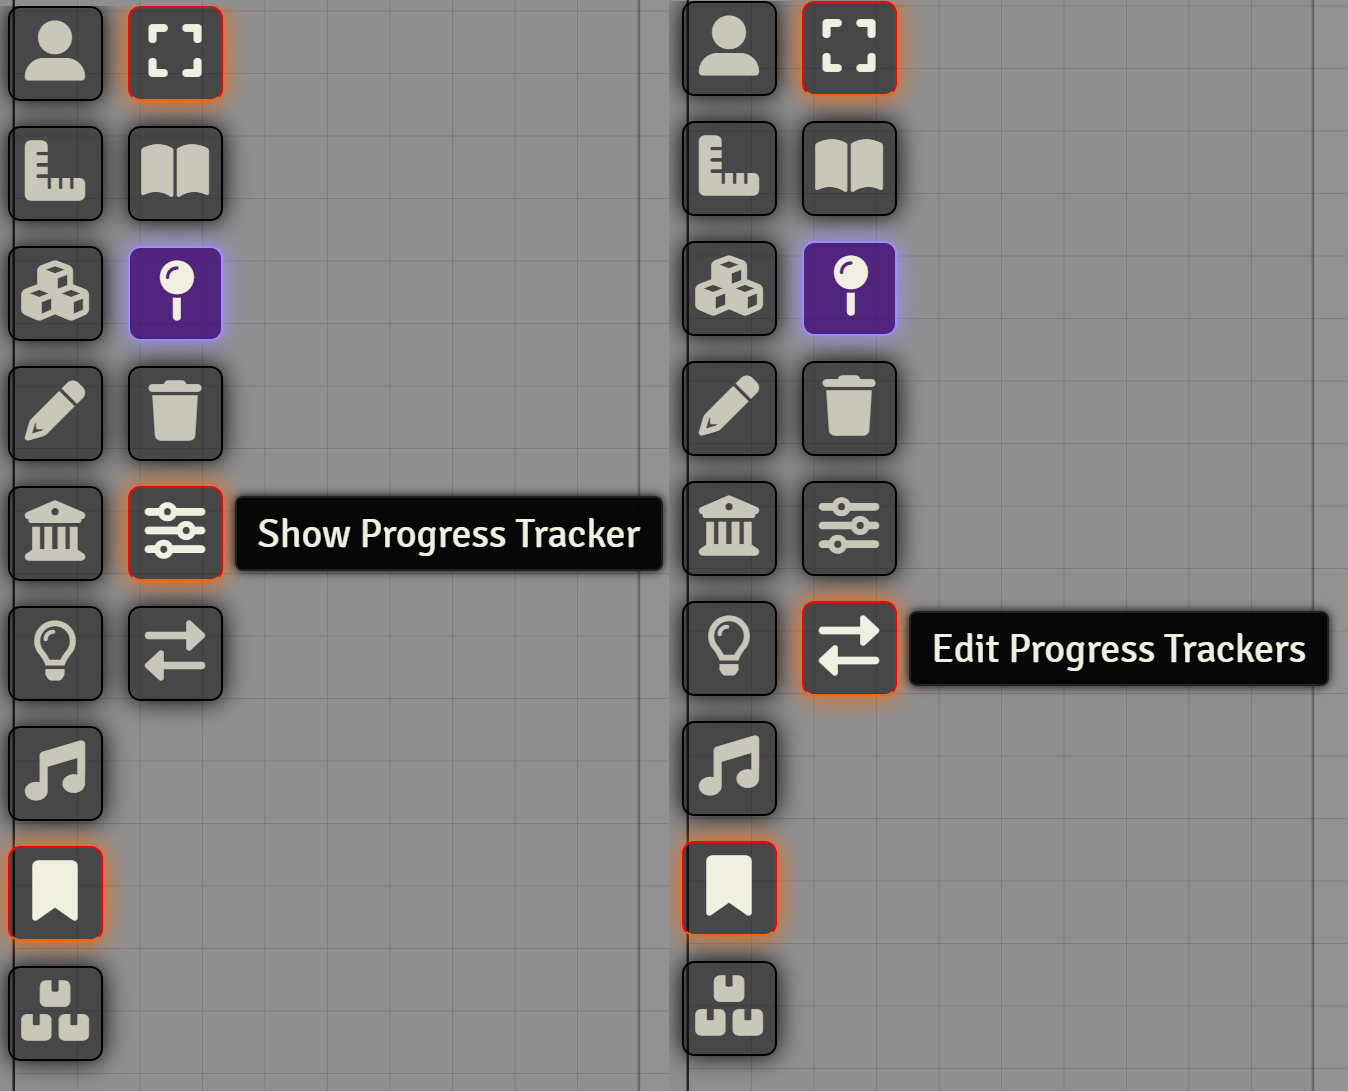 Progress Tracker buttons